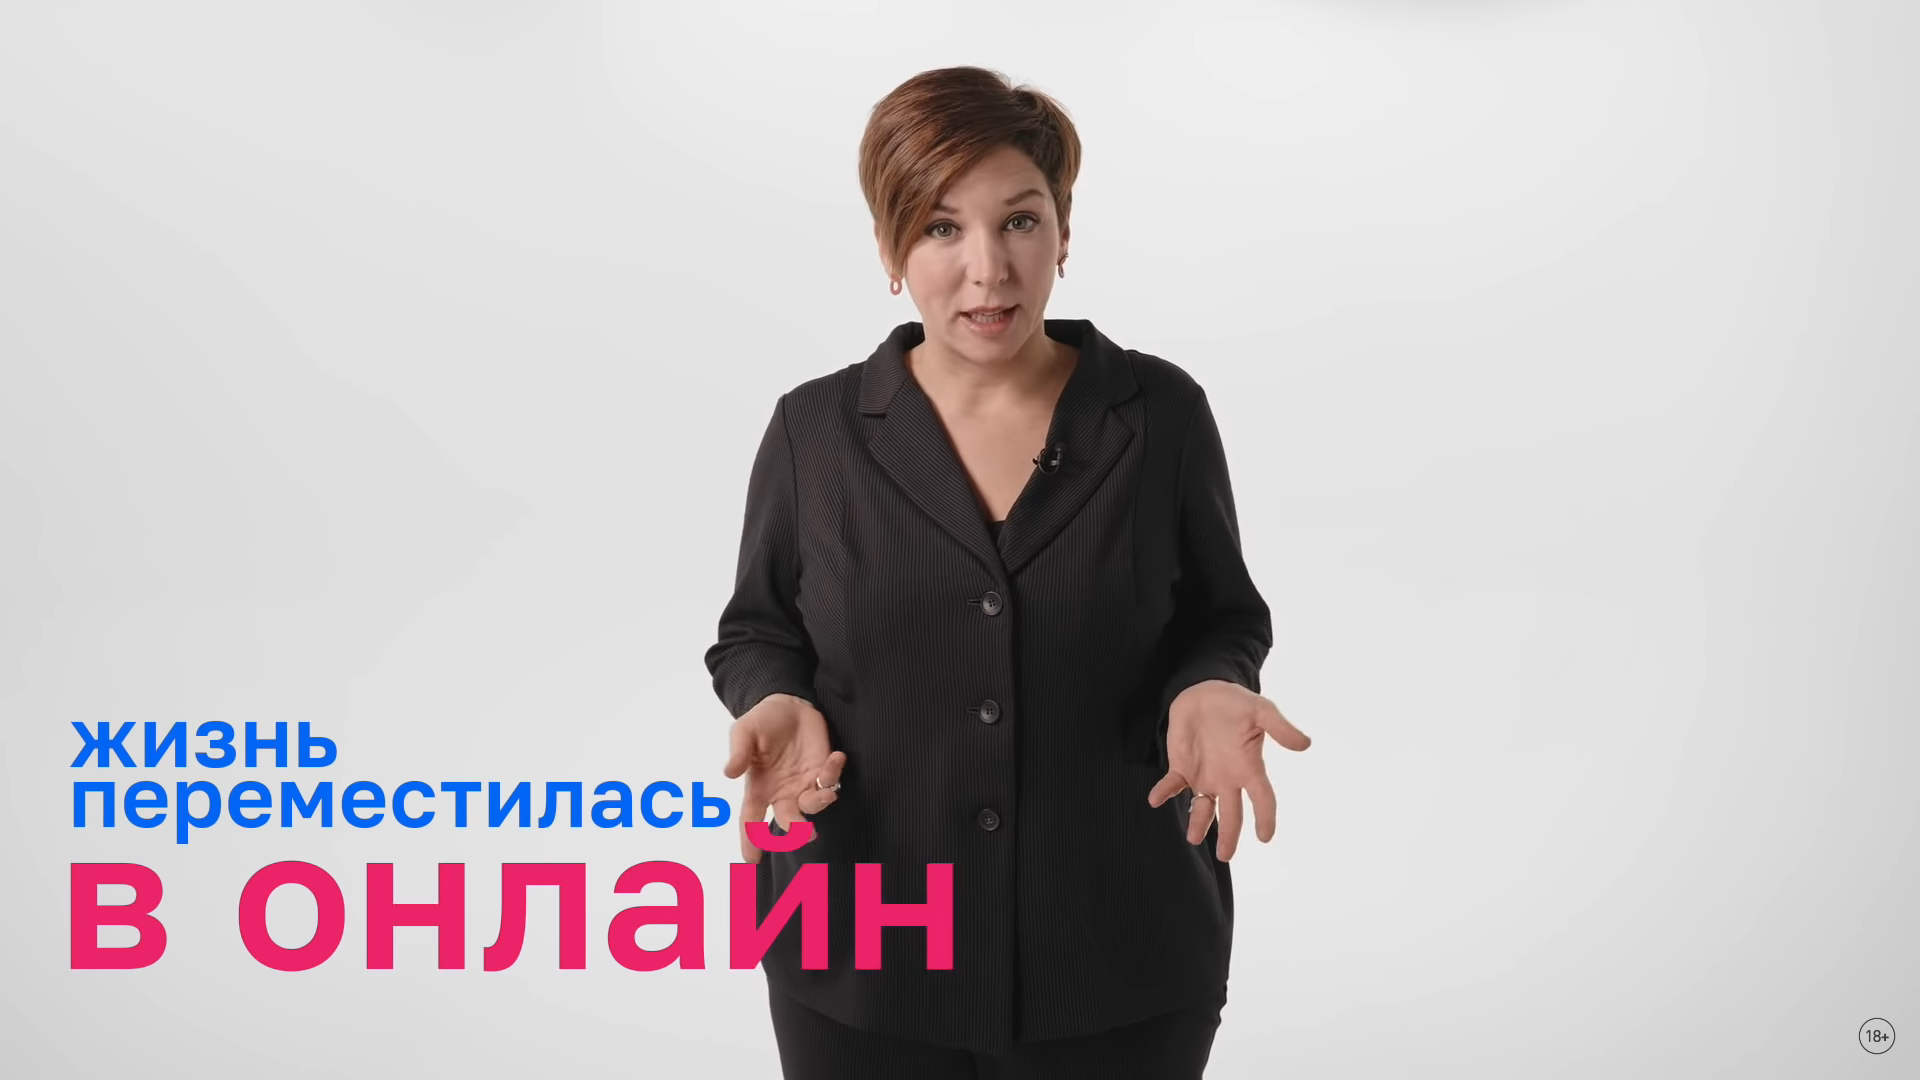 Катерина Гордеева выпустила фильм об онлайн-образовании в России